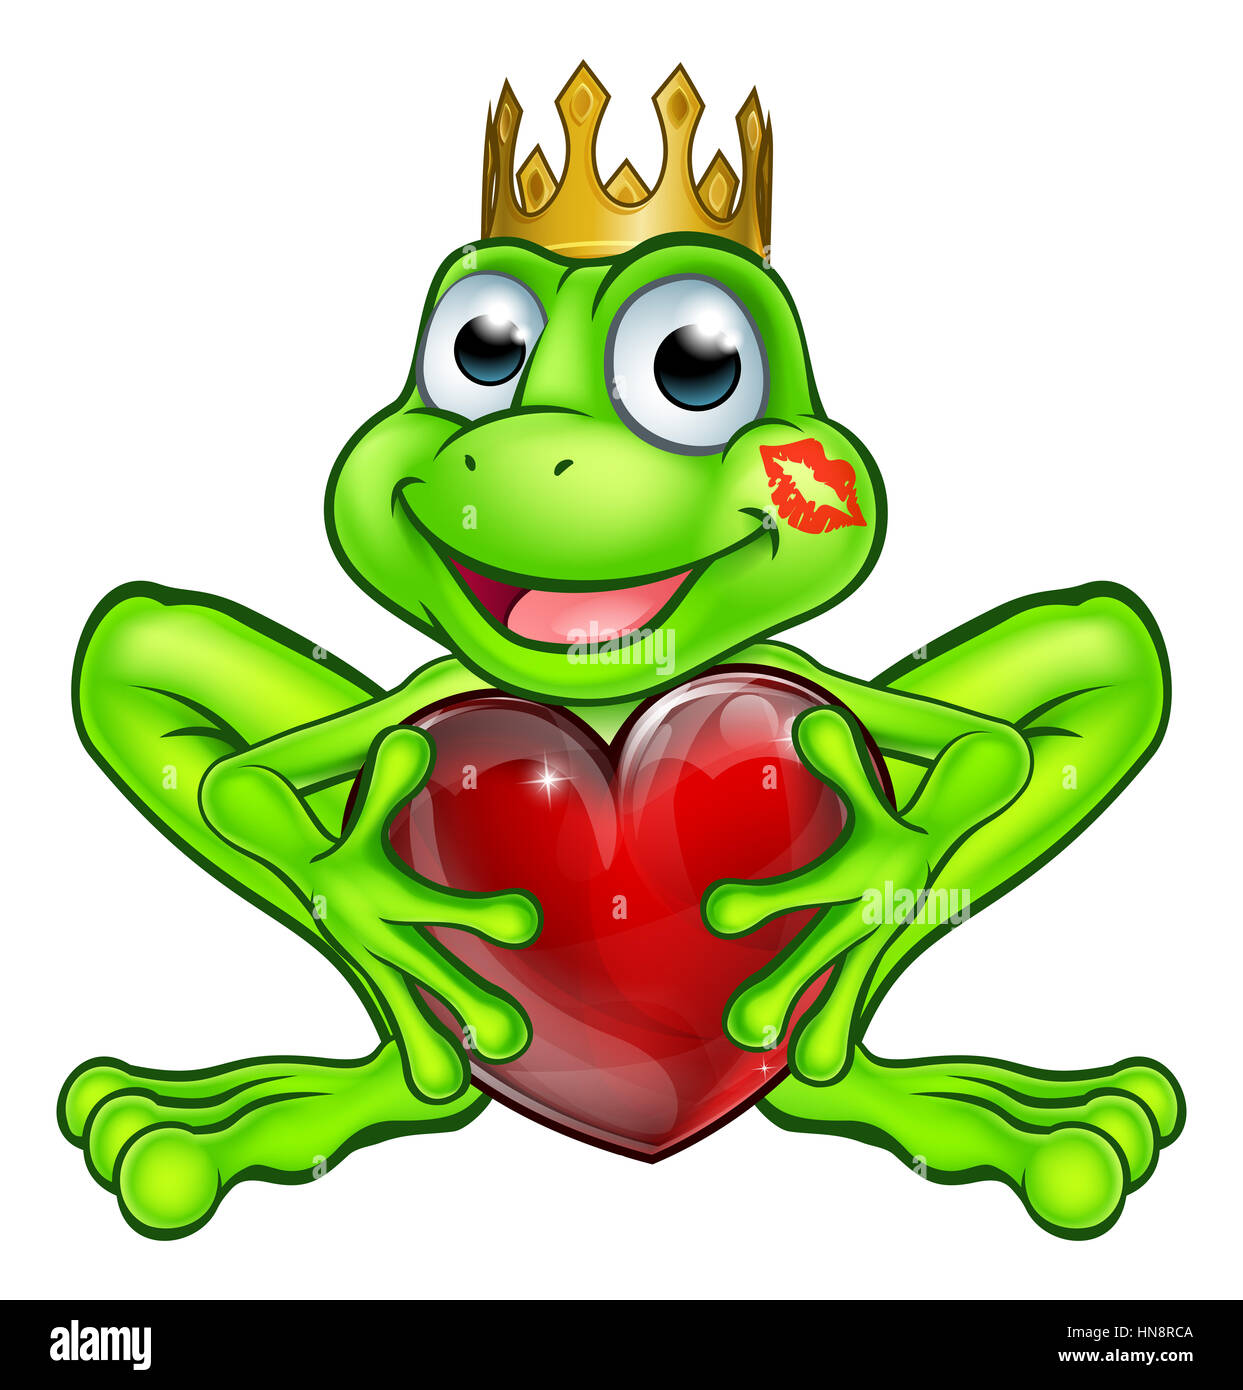 Caricature le prince grenouille mascotte weringa personnage de conte de fées et de la couronne d'or tenant une forme de coeur avec un rouge à lèvres kiss marque sur son visage Banque D'Images